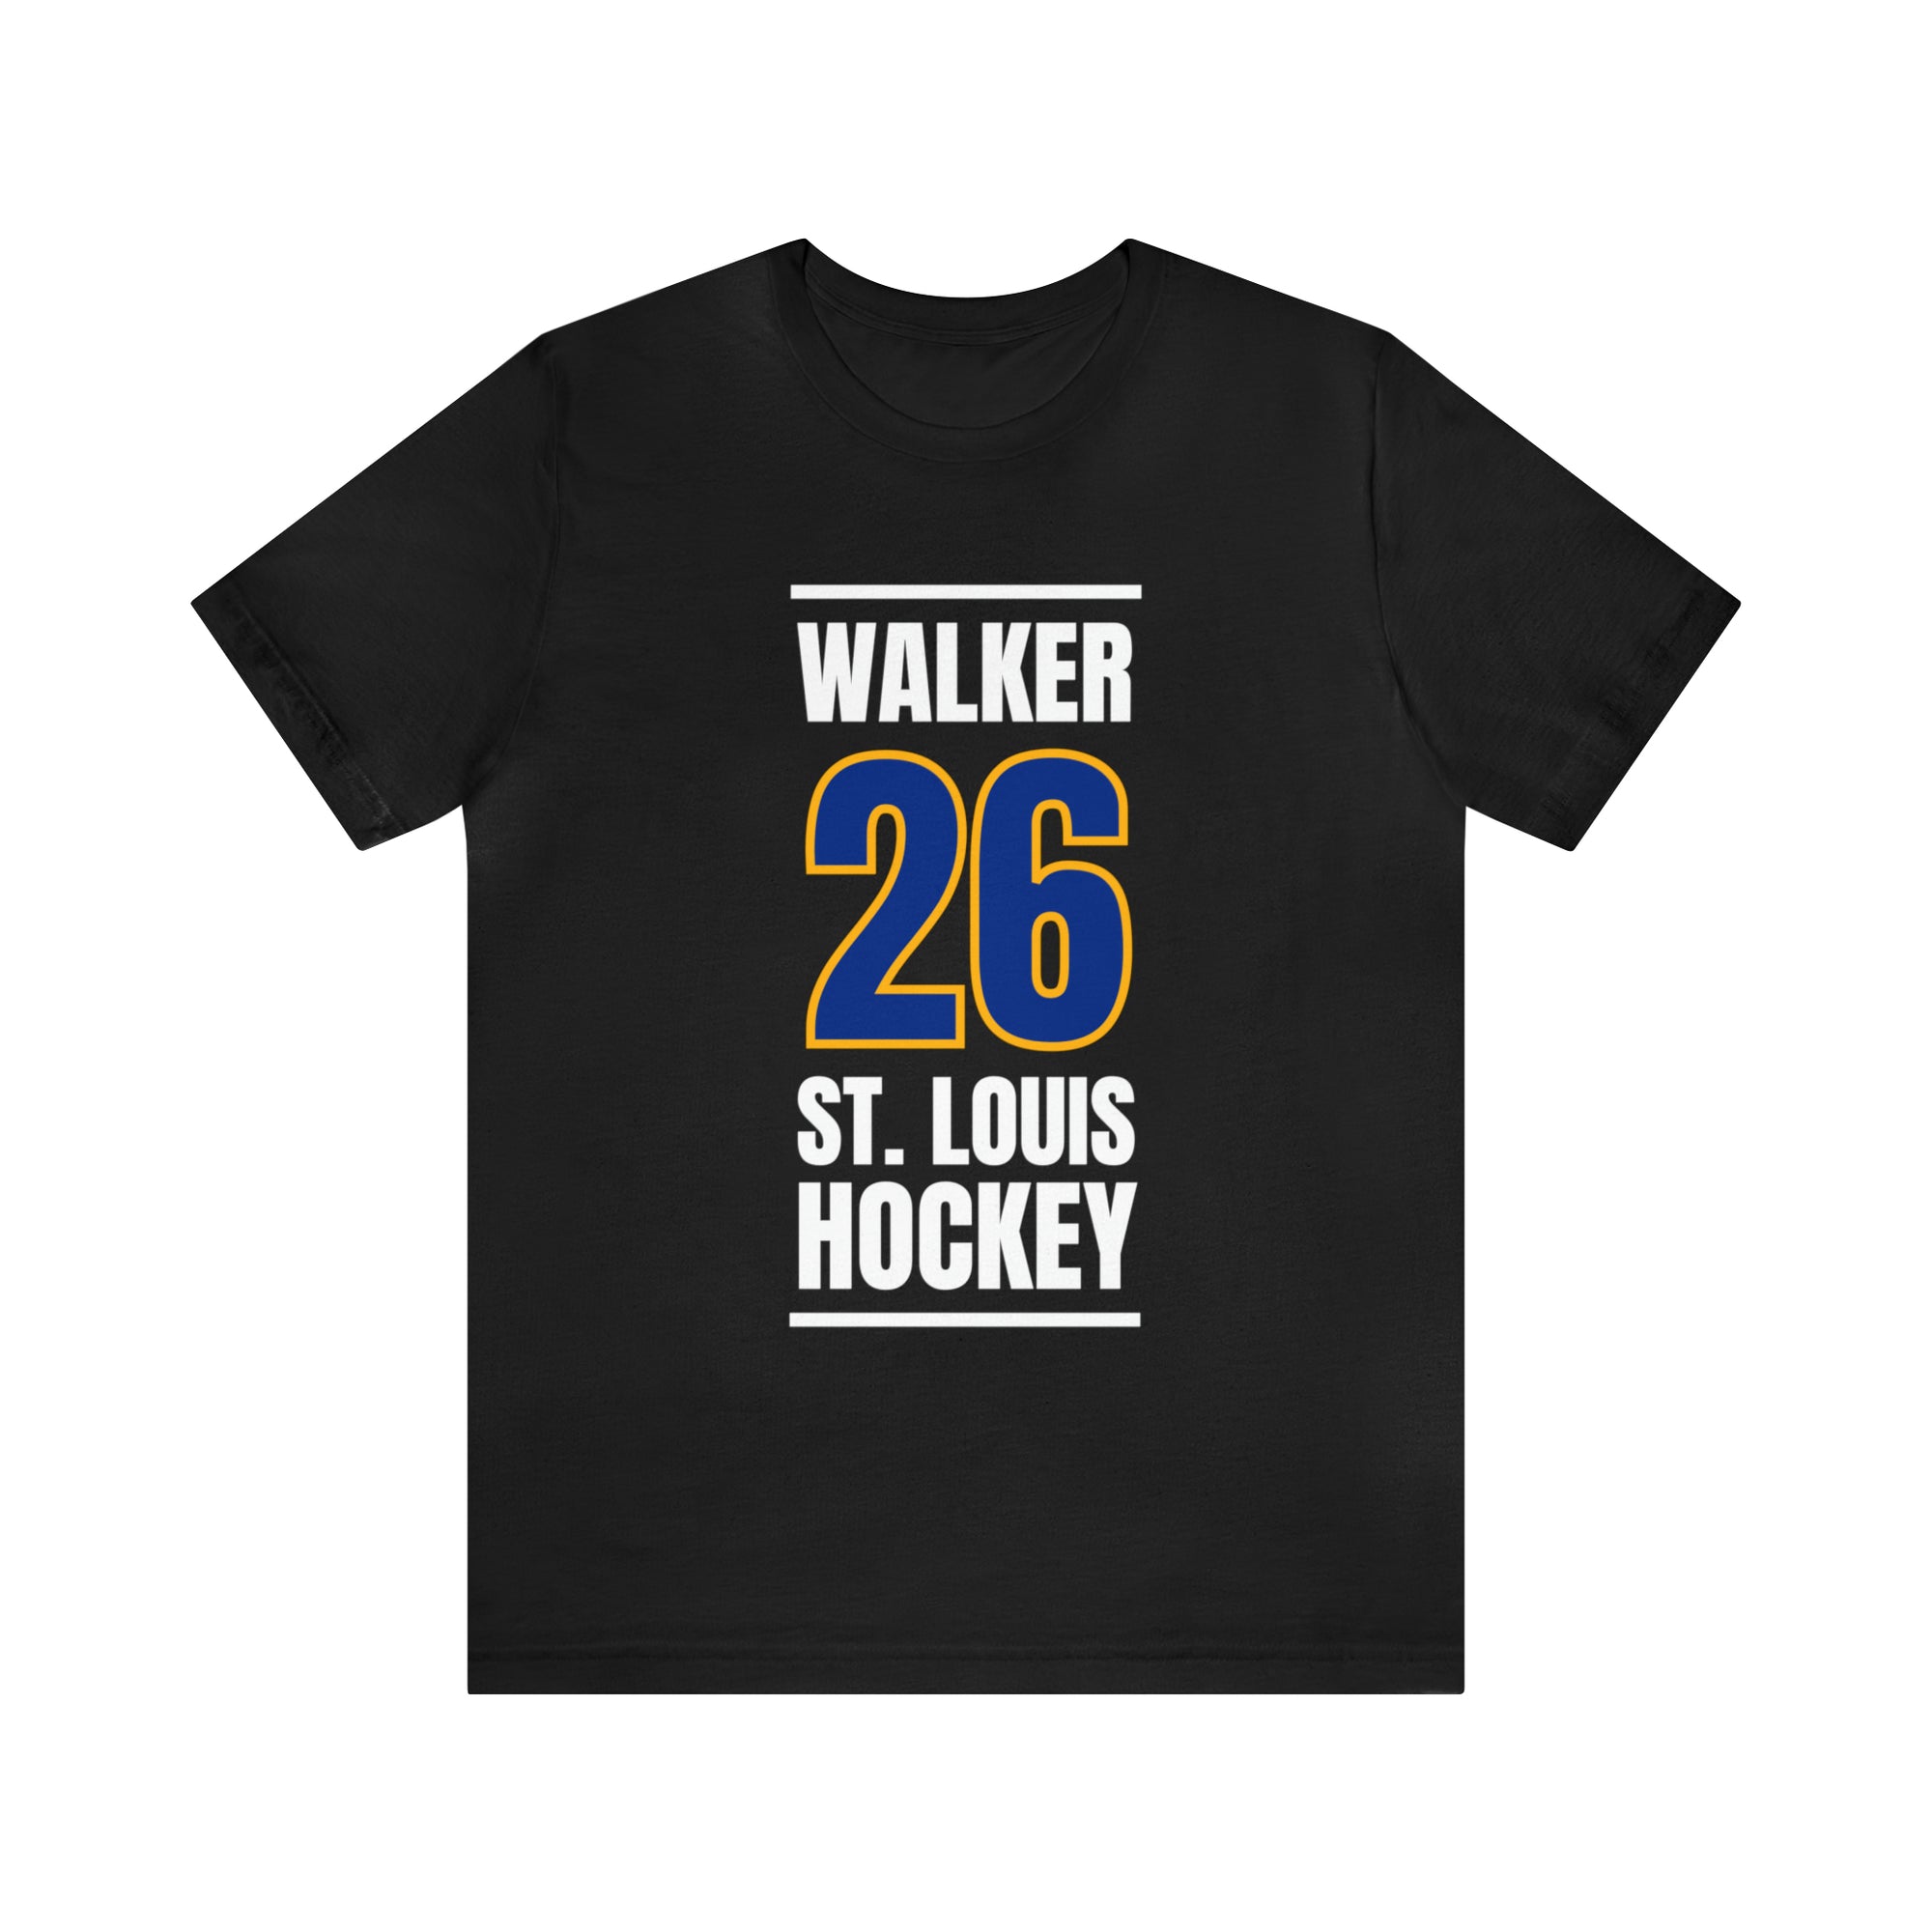 Walker 26 St. Louis Hockey Blue Vertical Design Unisex T-Shirt